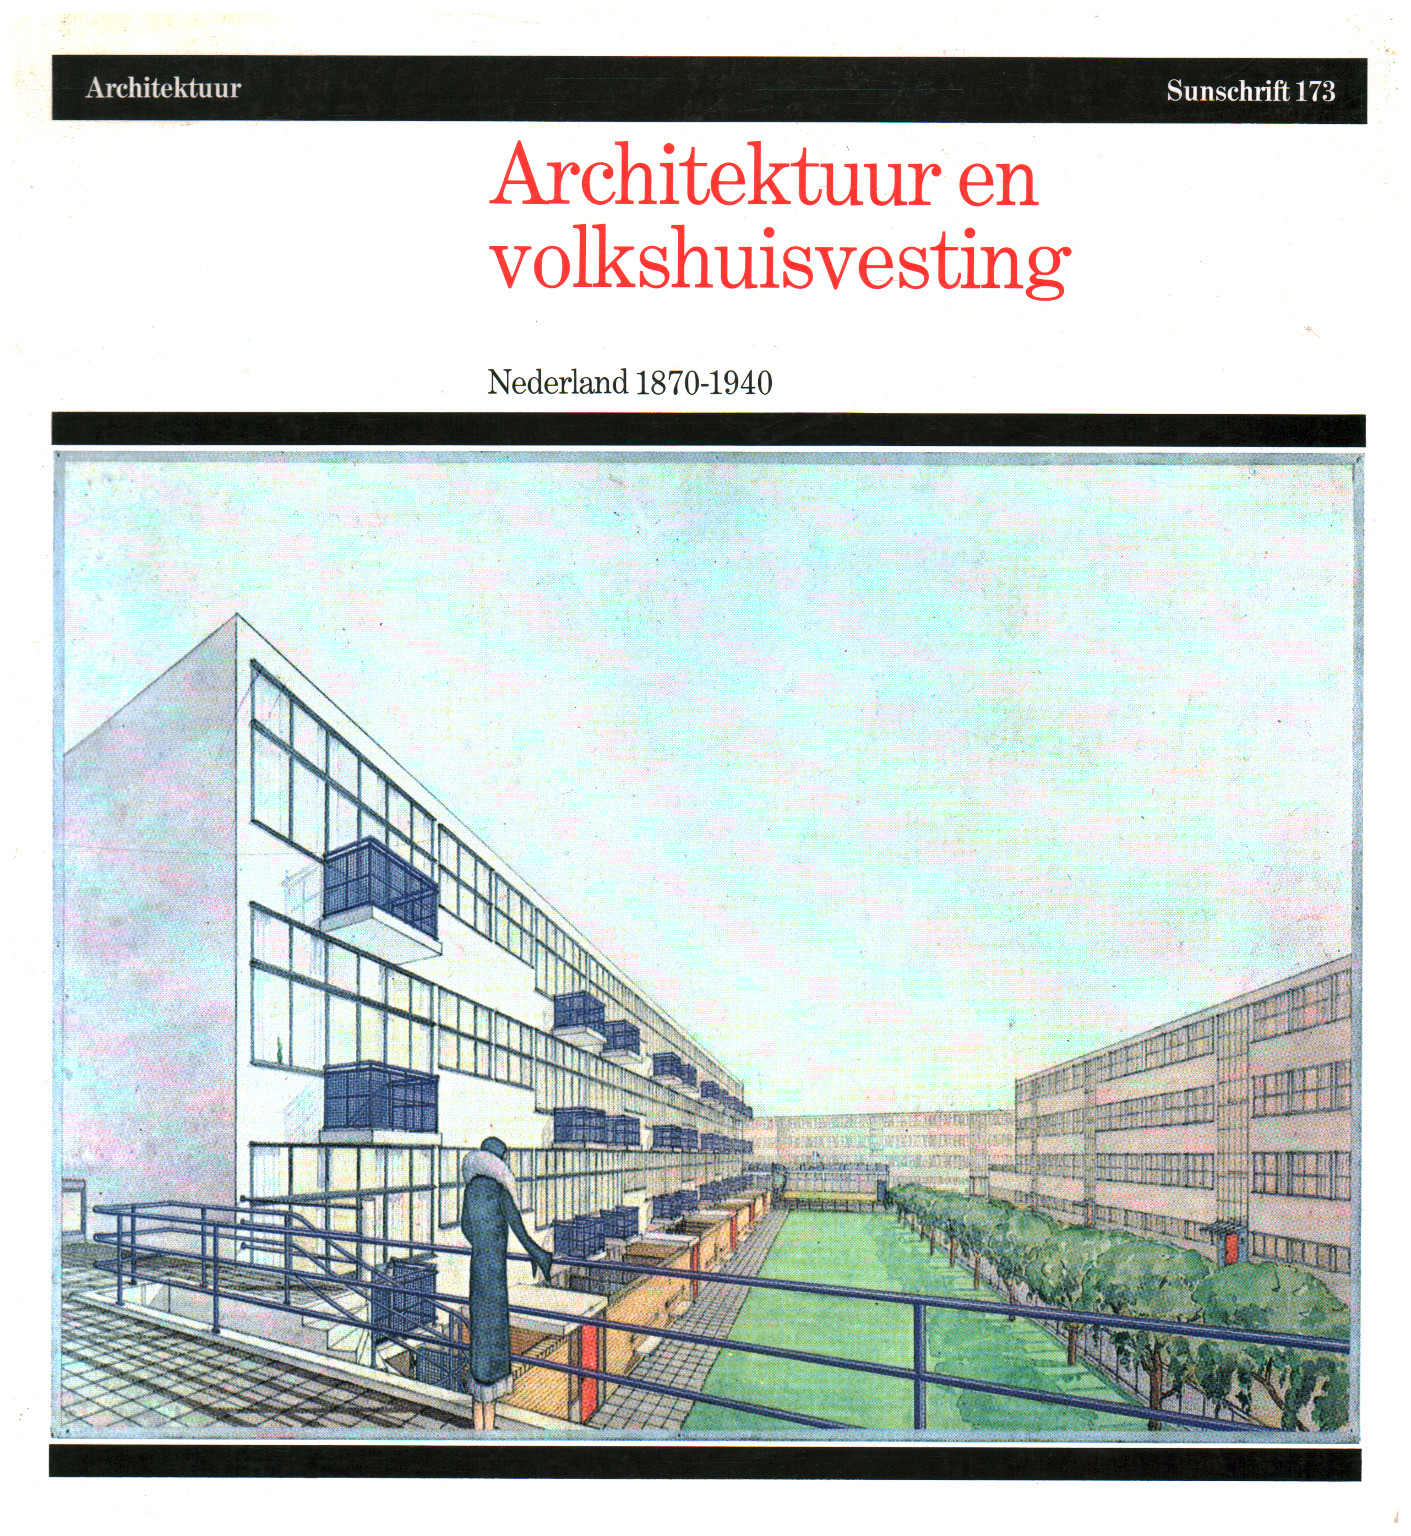 Architektur en volkshuisvesting, s.a.